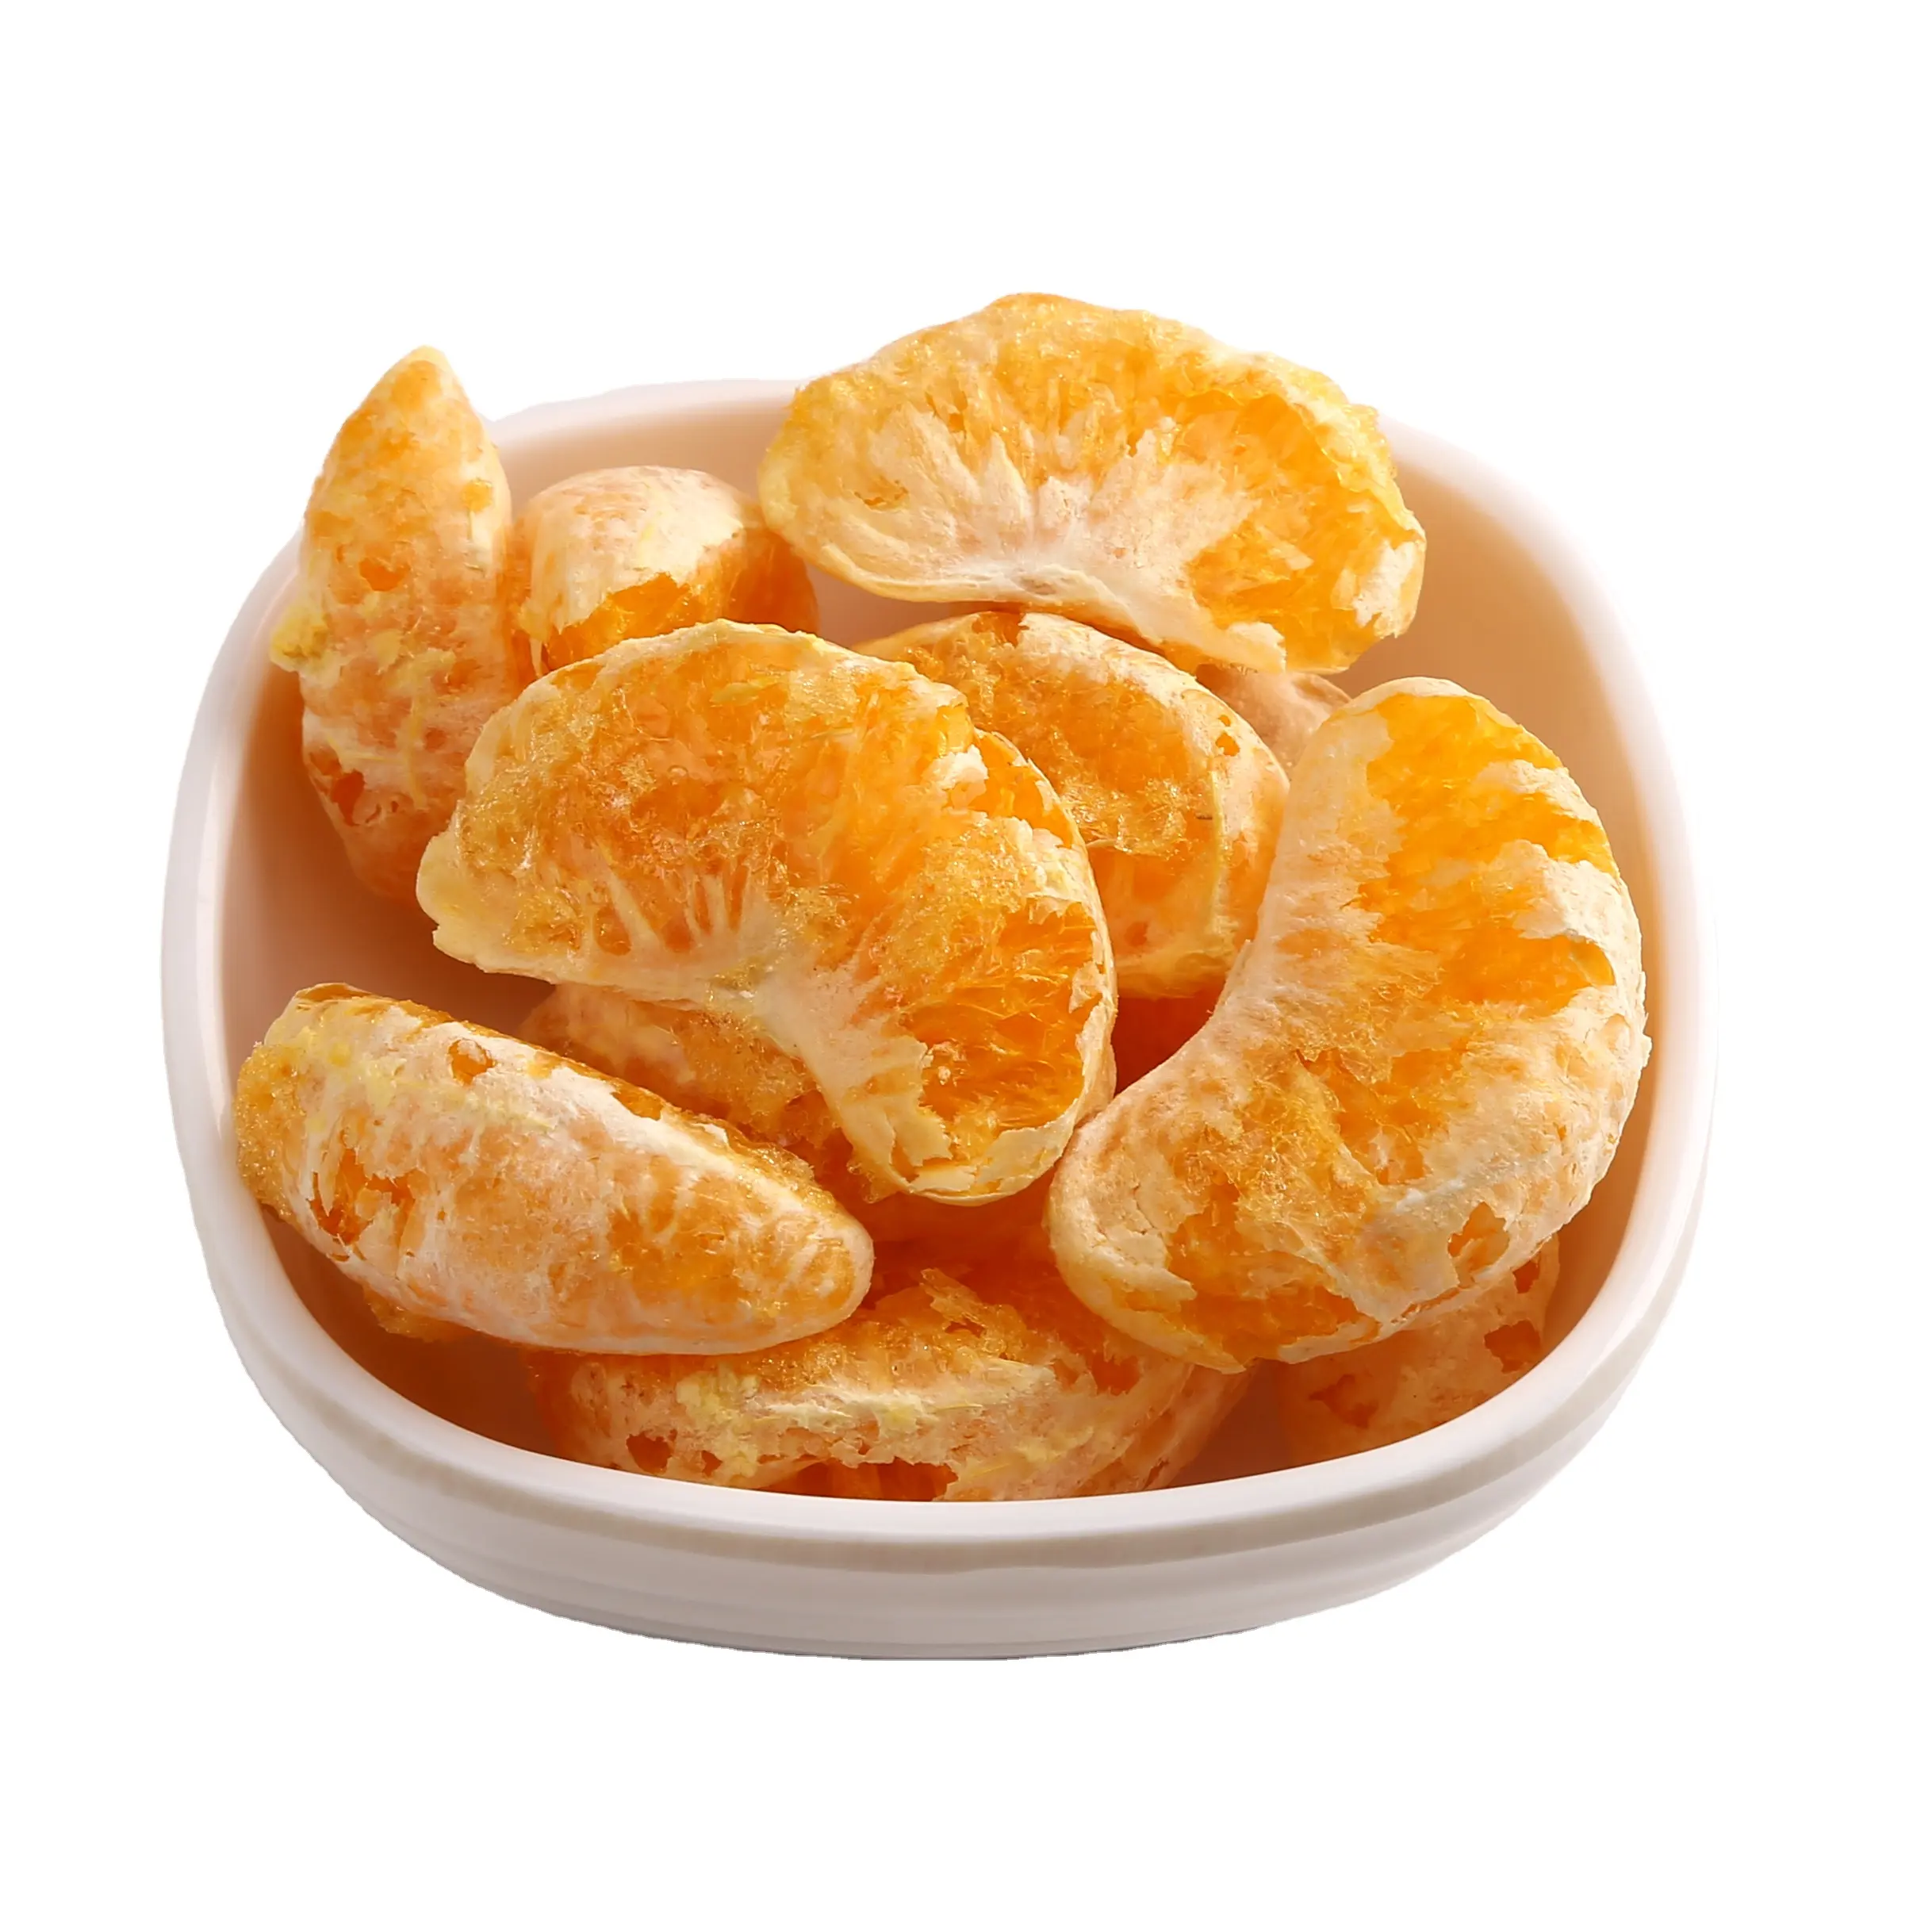 Toptan dondurularak kurutulmuş mandalina turuncu meyve çayı vitamin takviyesi toplu FD gıda dondurularak kurutulmuş mandalina için iyi